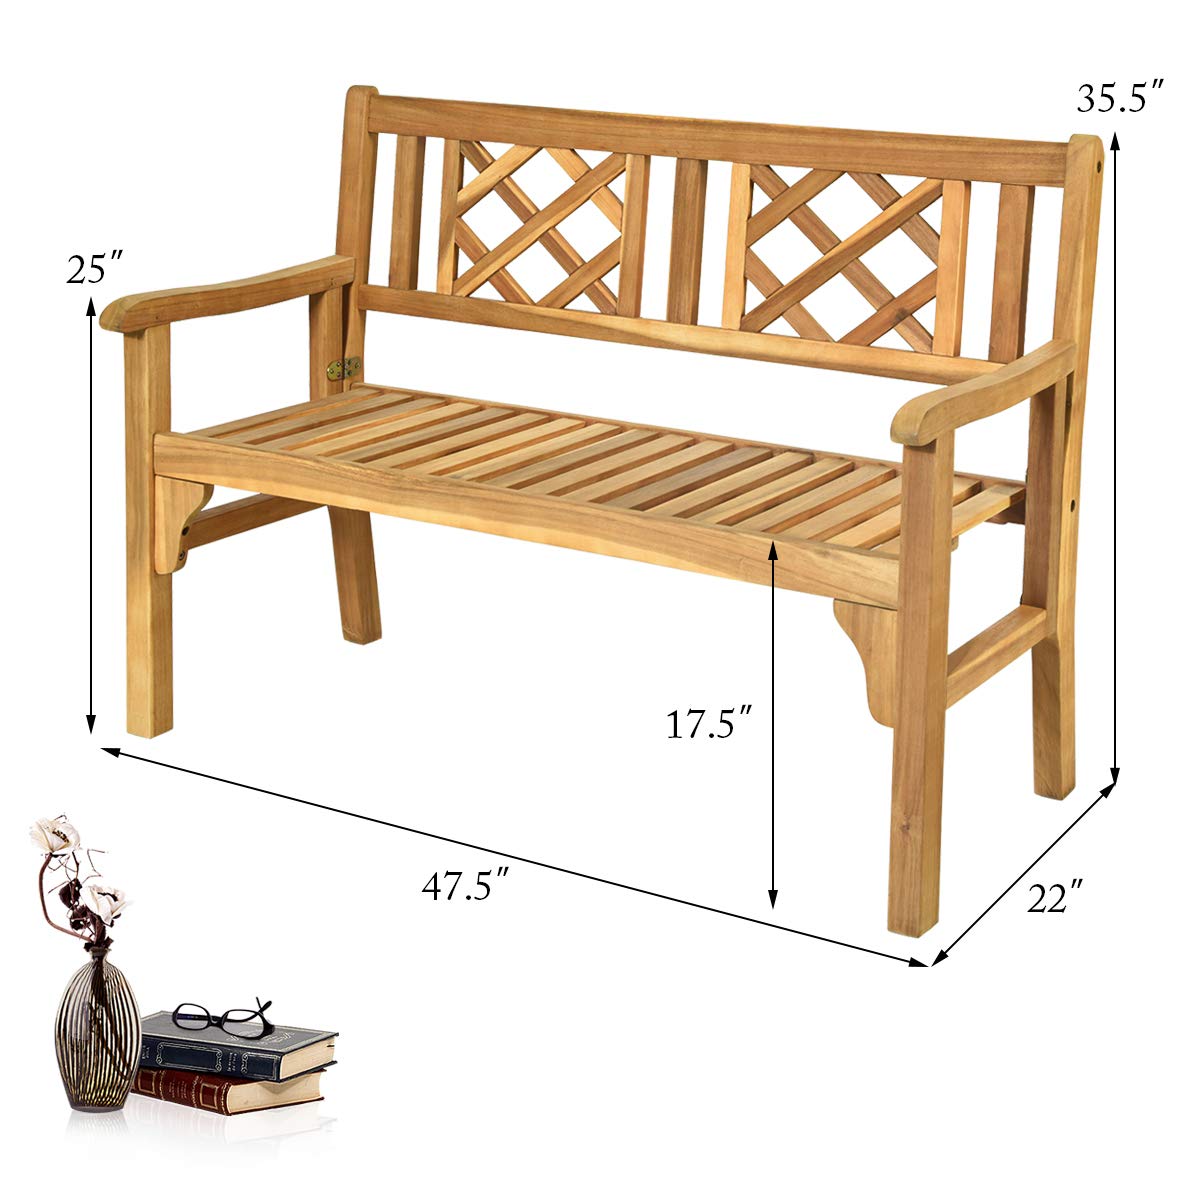 Giantex Patio Wooden Bench, 4 Ft Foldable Acacia Garden Bench (Teak)